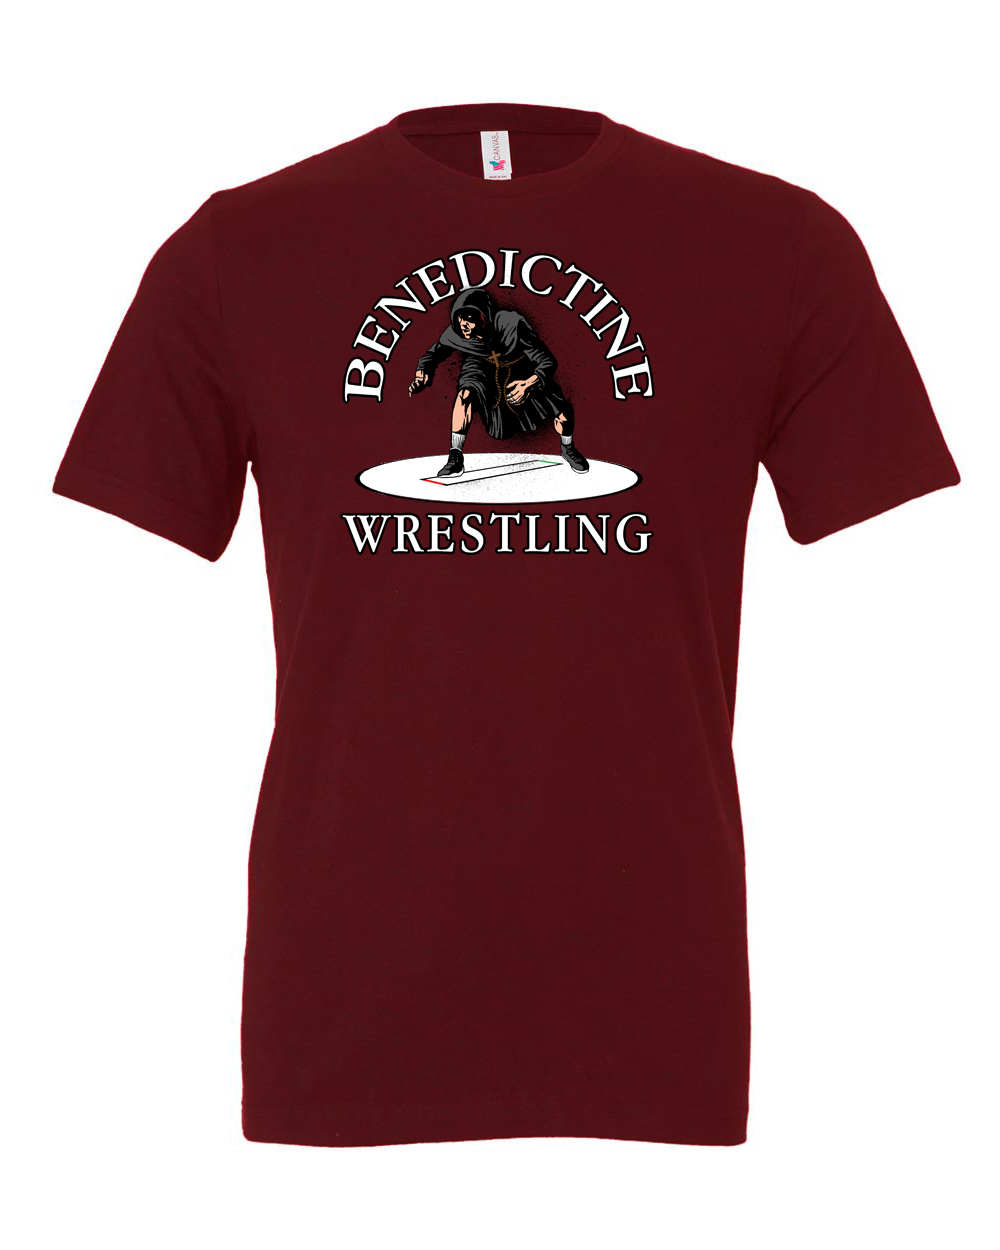 BC Wrestling “Wrestler” Unisex T-Shirt